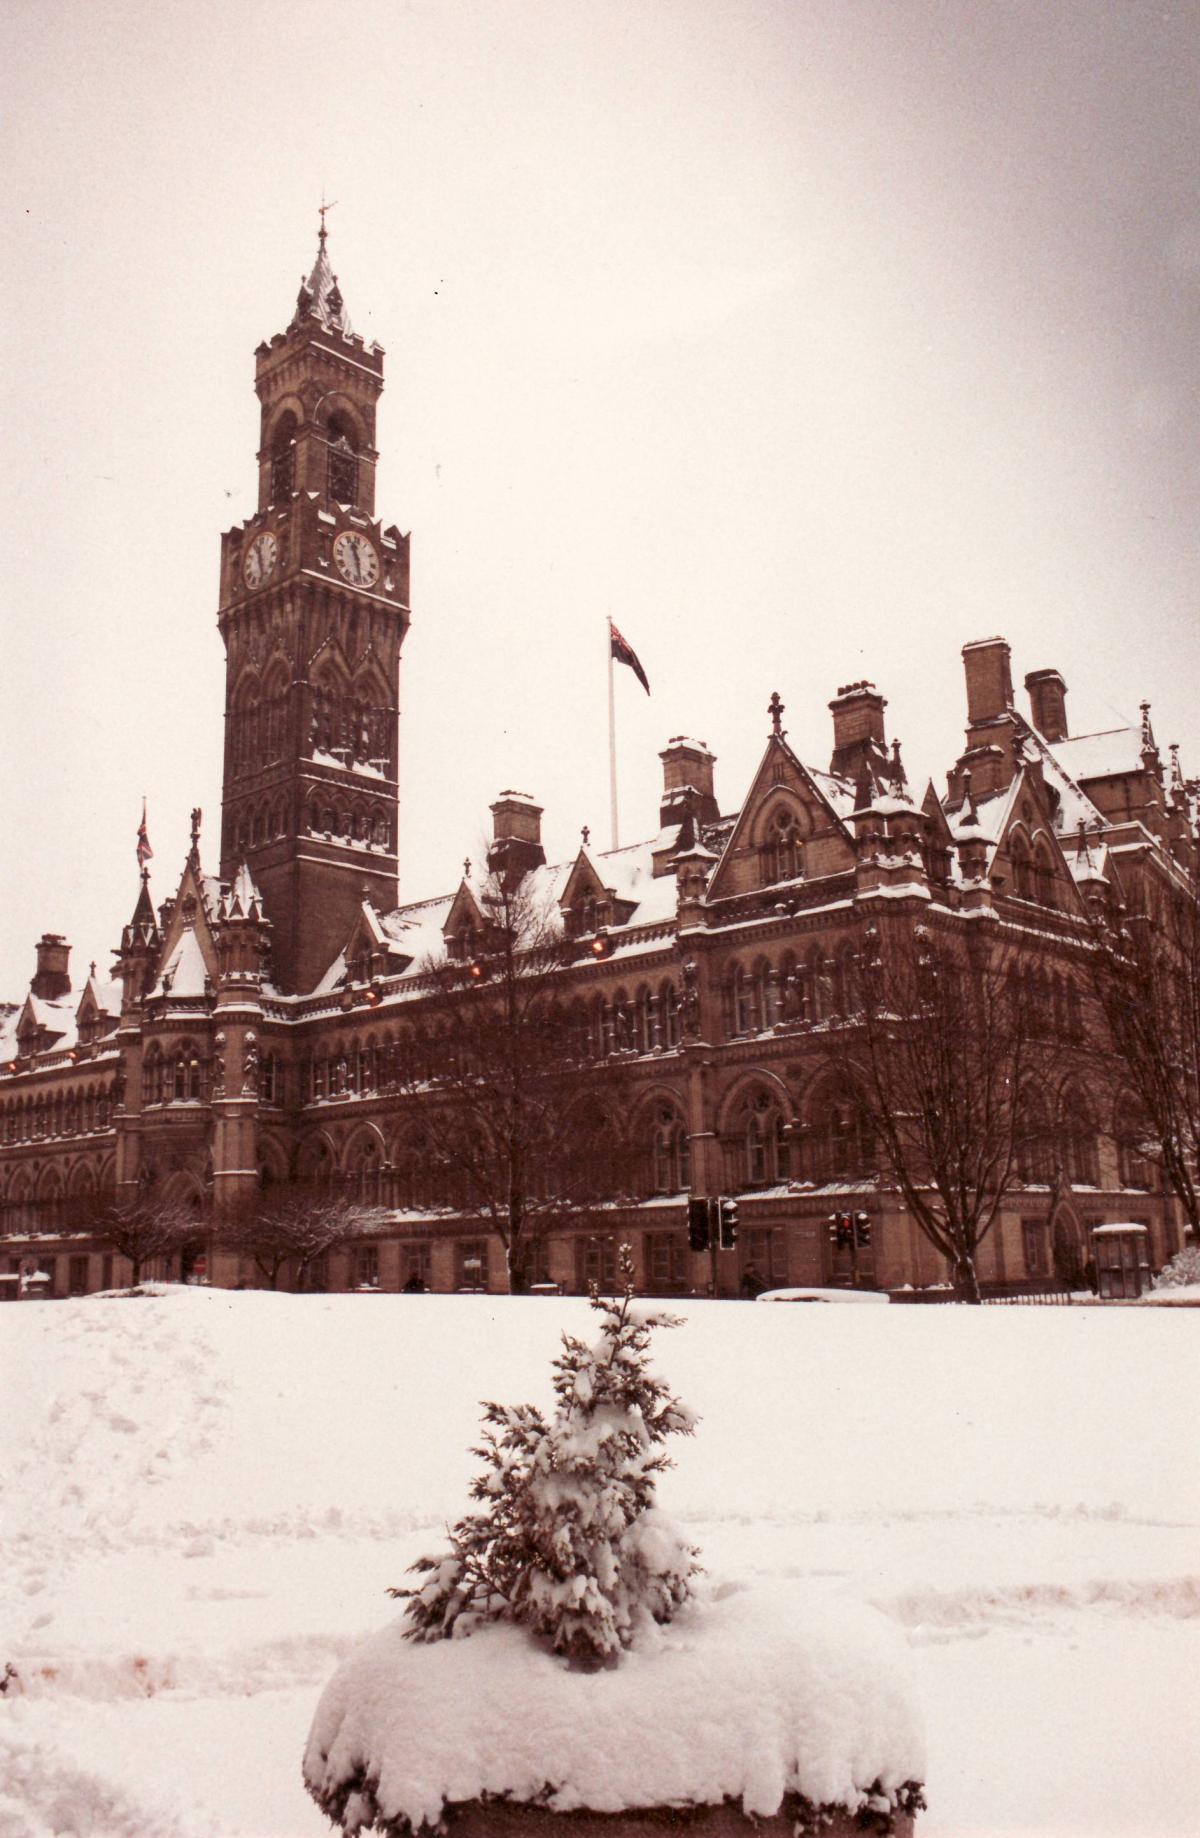 A snowy Bradford in 1991